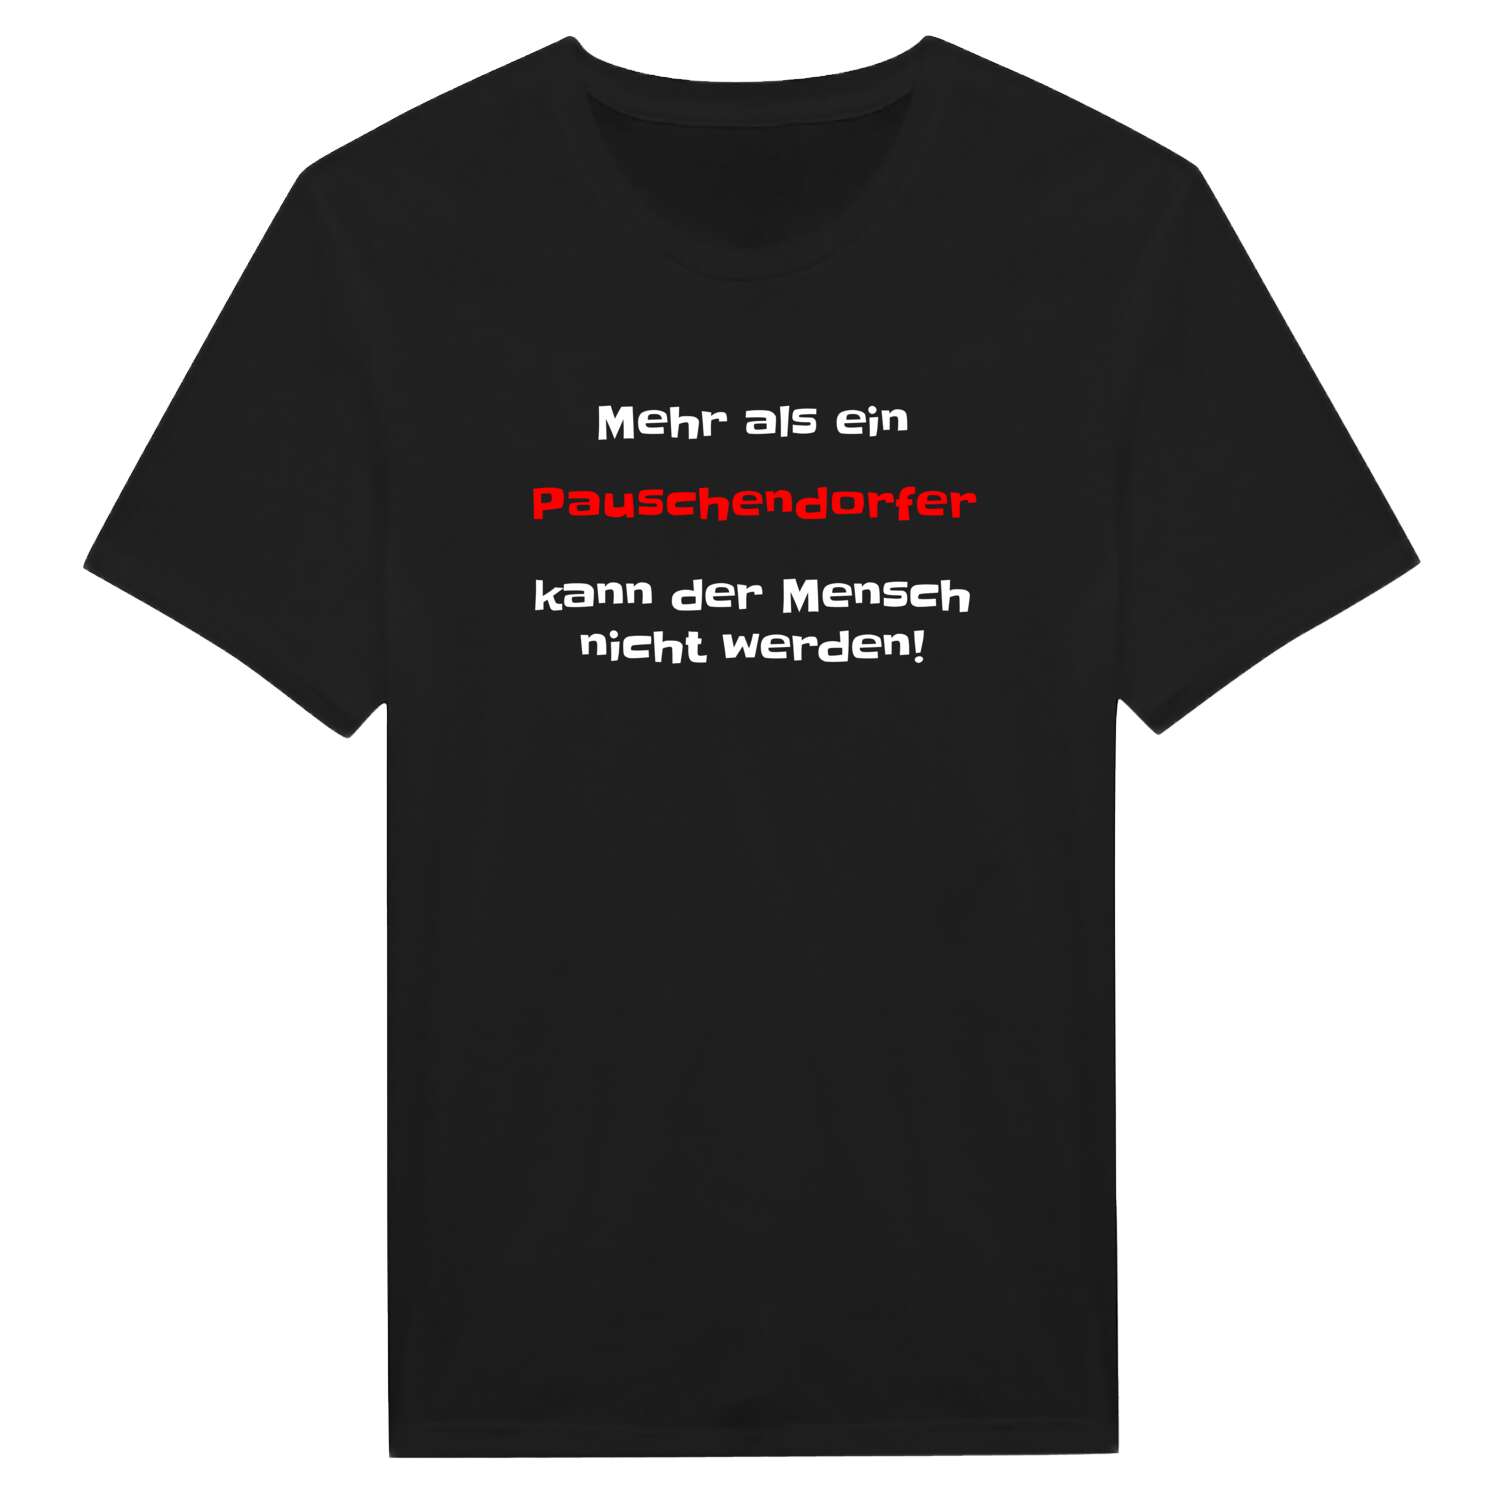 Pauschendorf T-Shirt »Mehr als ein«